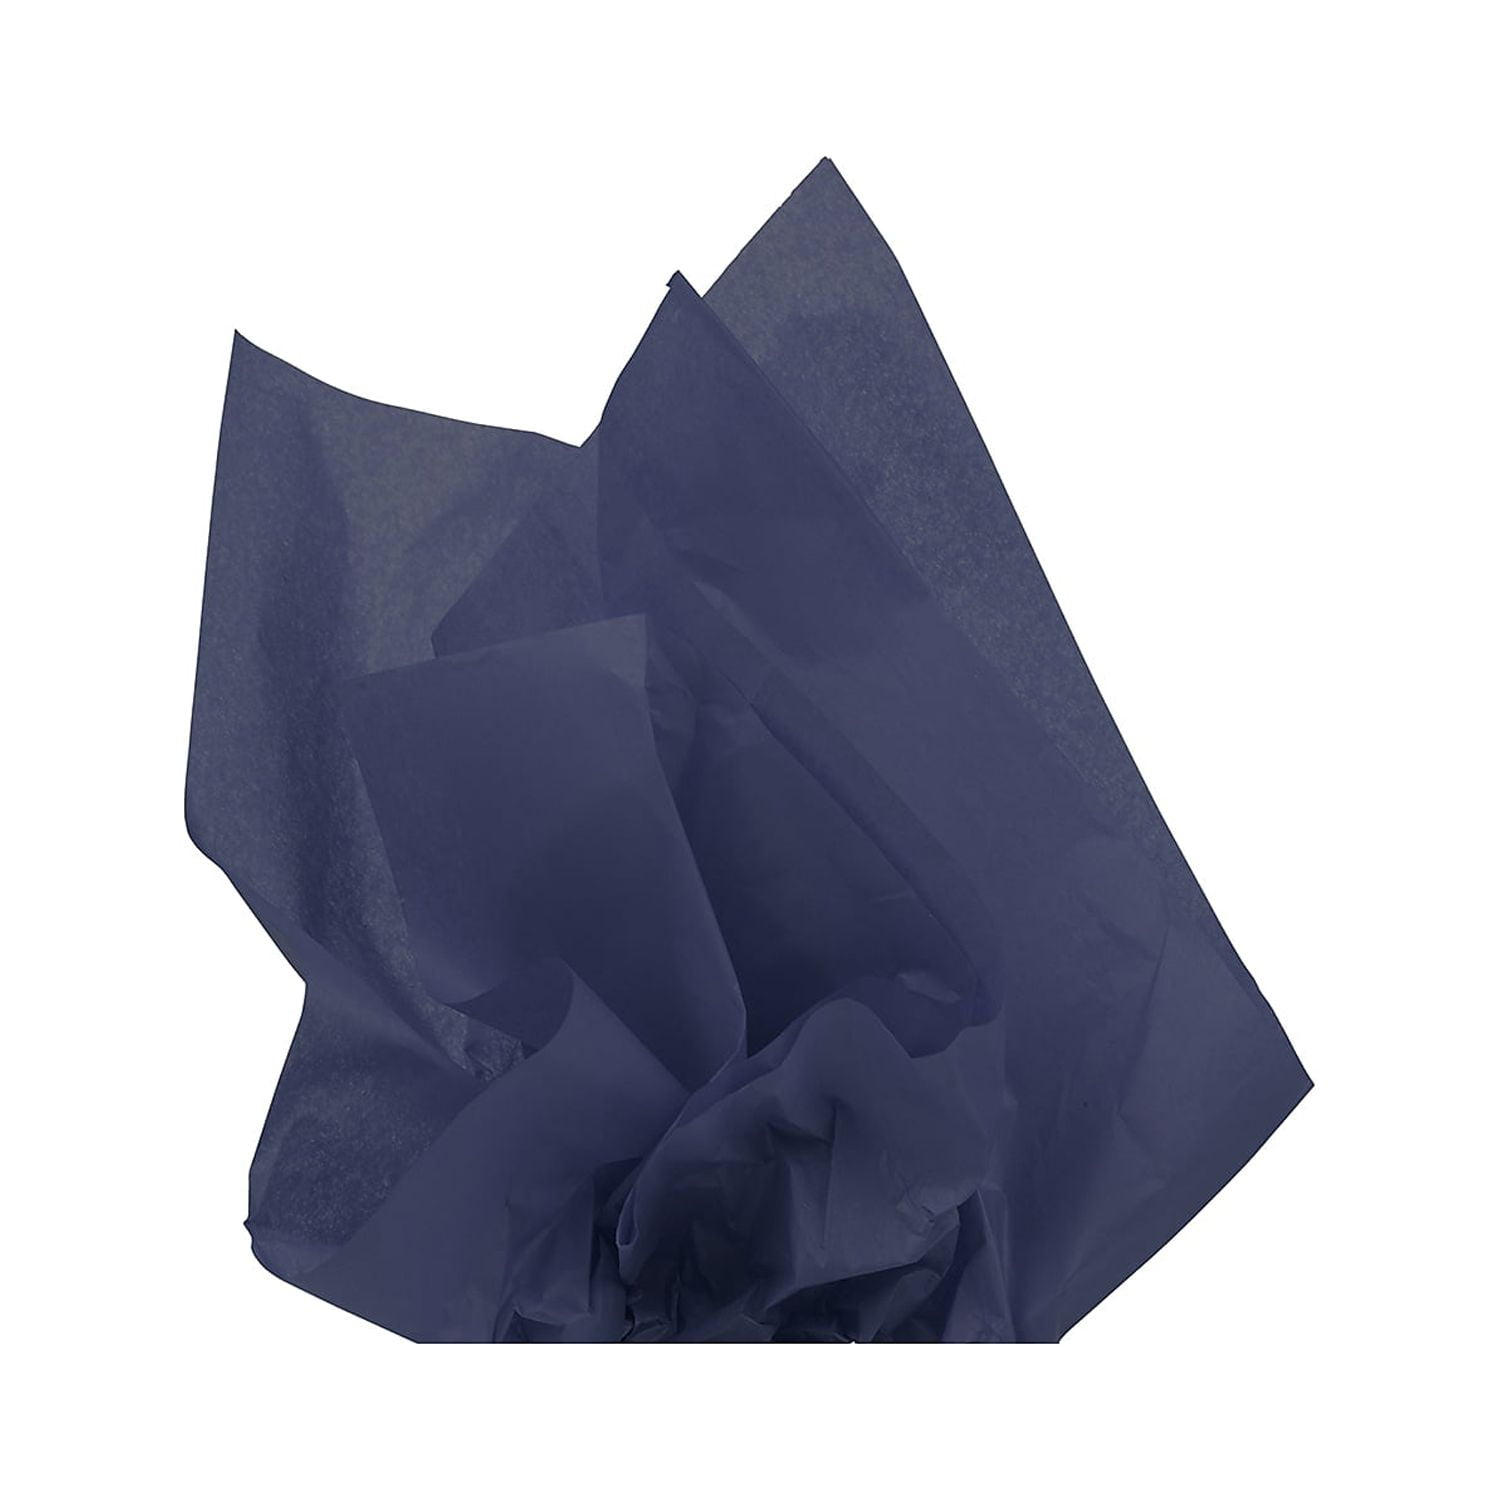 Aqua Sky Sparkle Bulk Premium Tissue Paper - 200 Sheets, 20”x30